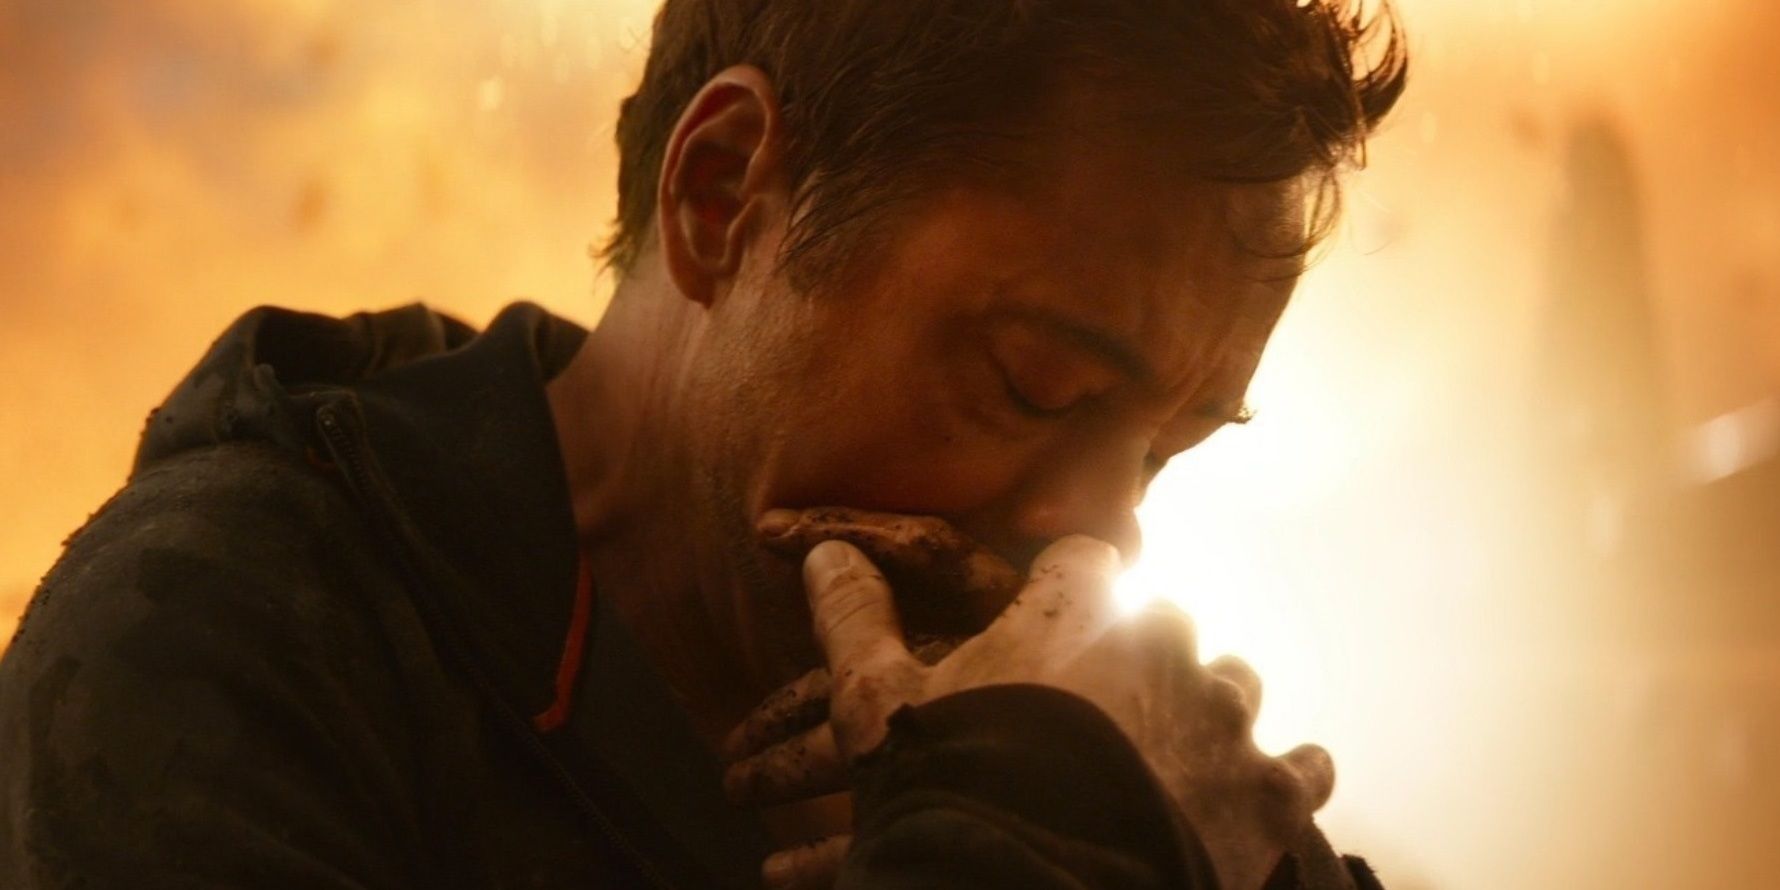 Robert Downey, Jr. as Iron Man in "Avengers: Infinity War" (2018)